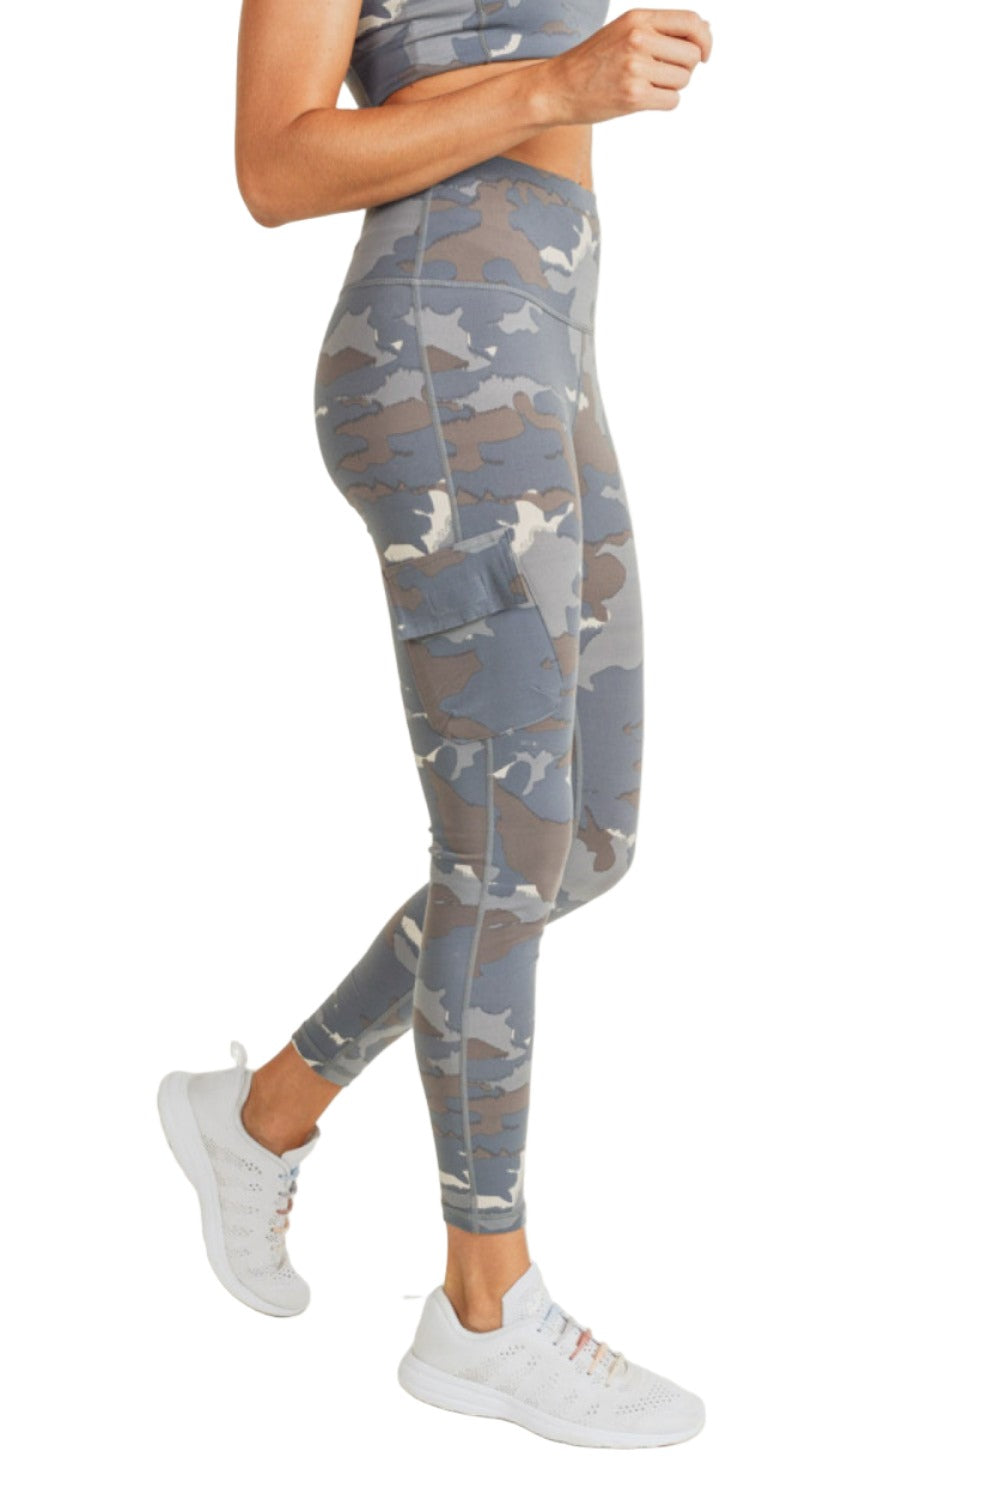 Camouflage Leggings with pockets - AfriBix White Camo – Afribix